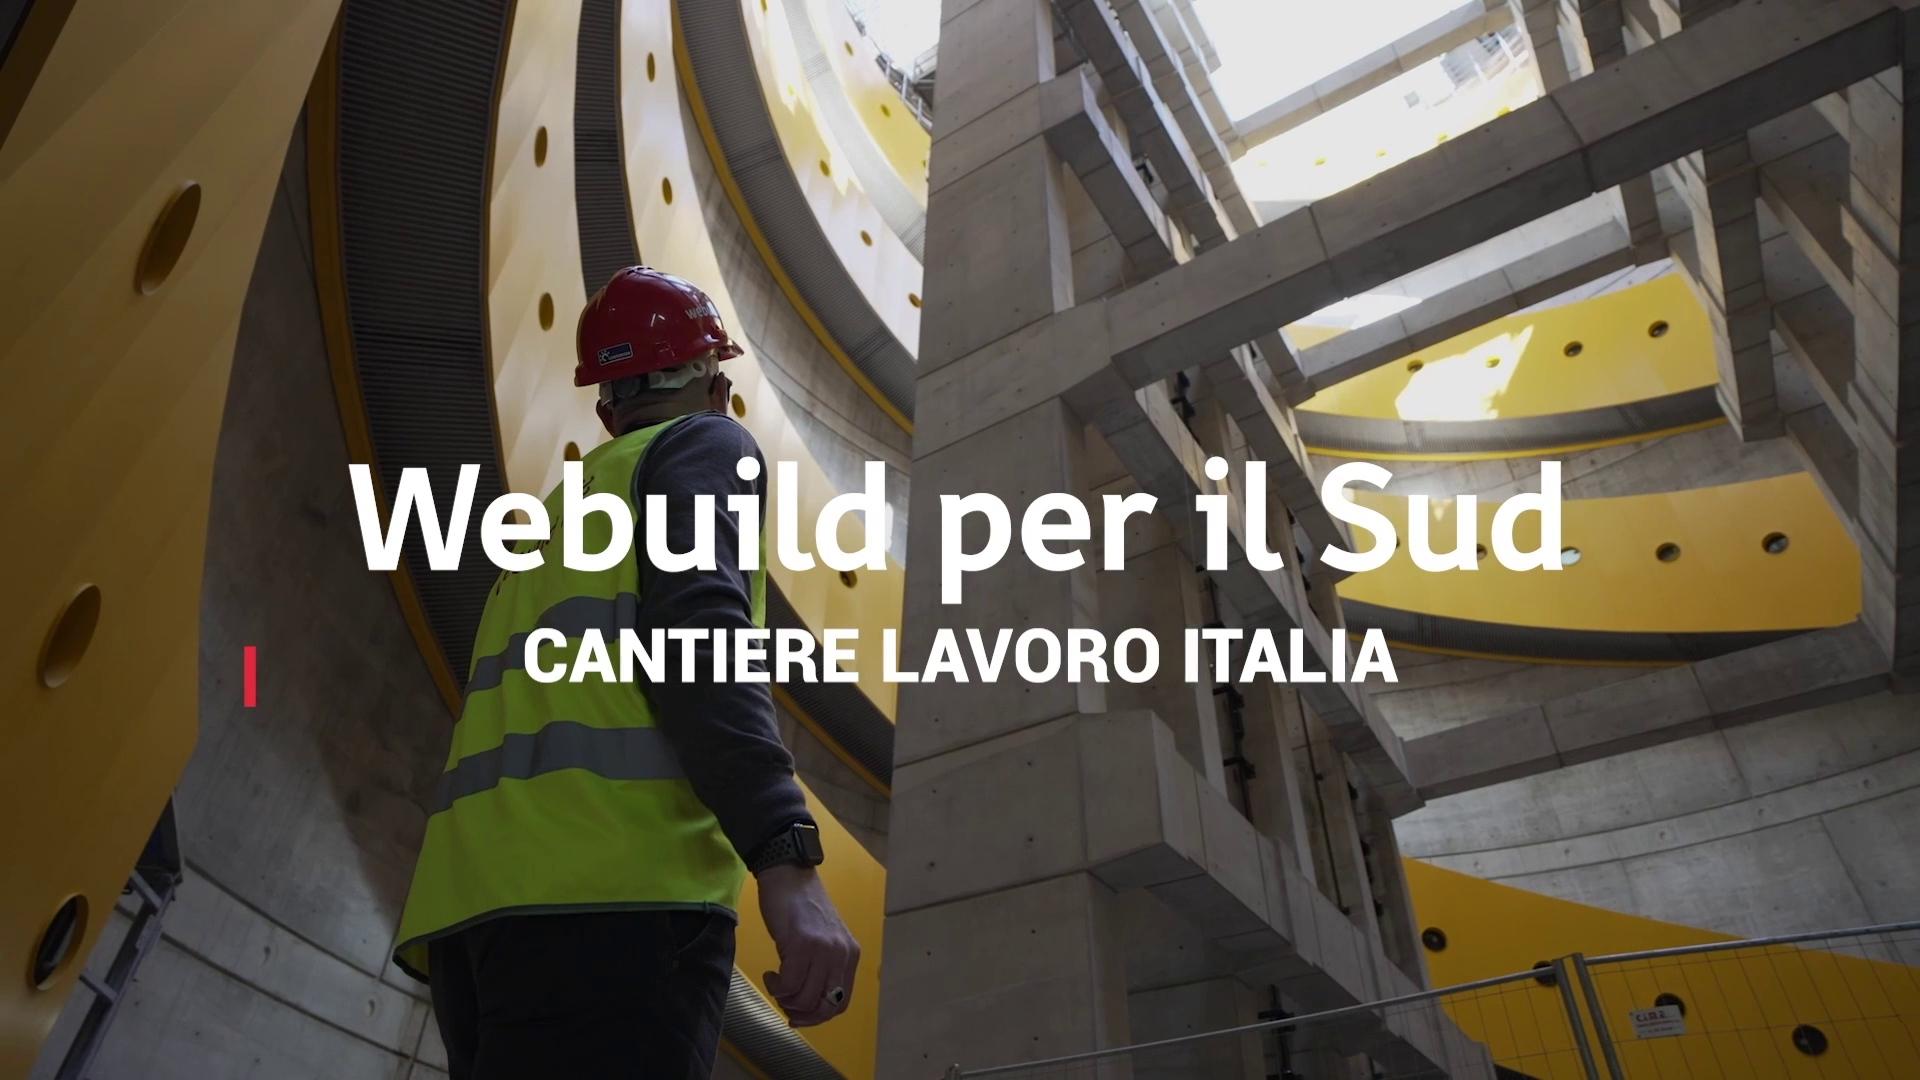 Videonews Cantiere Lavoro Italia, Webuild per il Sud